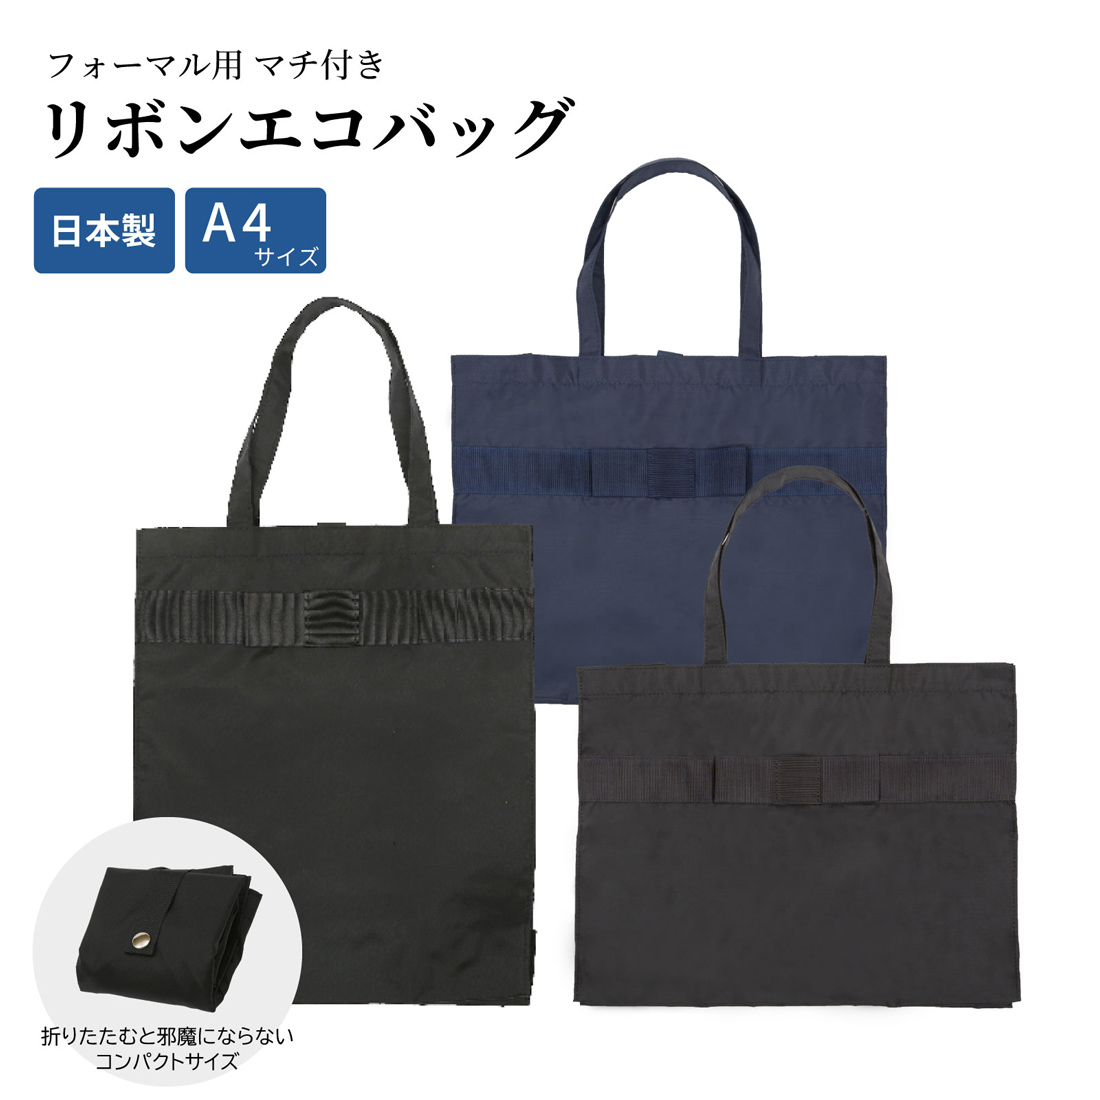 ポスト投函送料無料 A4サイズ 書類 フォーマル用リボンエコバッグ マチ付 選べる縦型横型 黒 紺 完全日本製